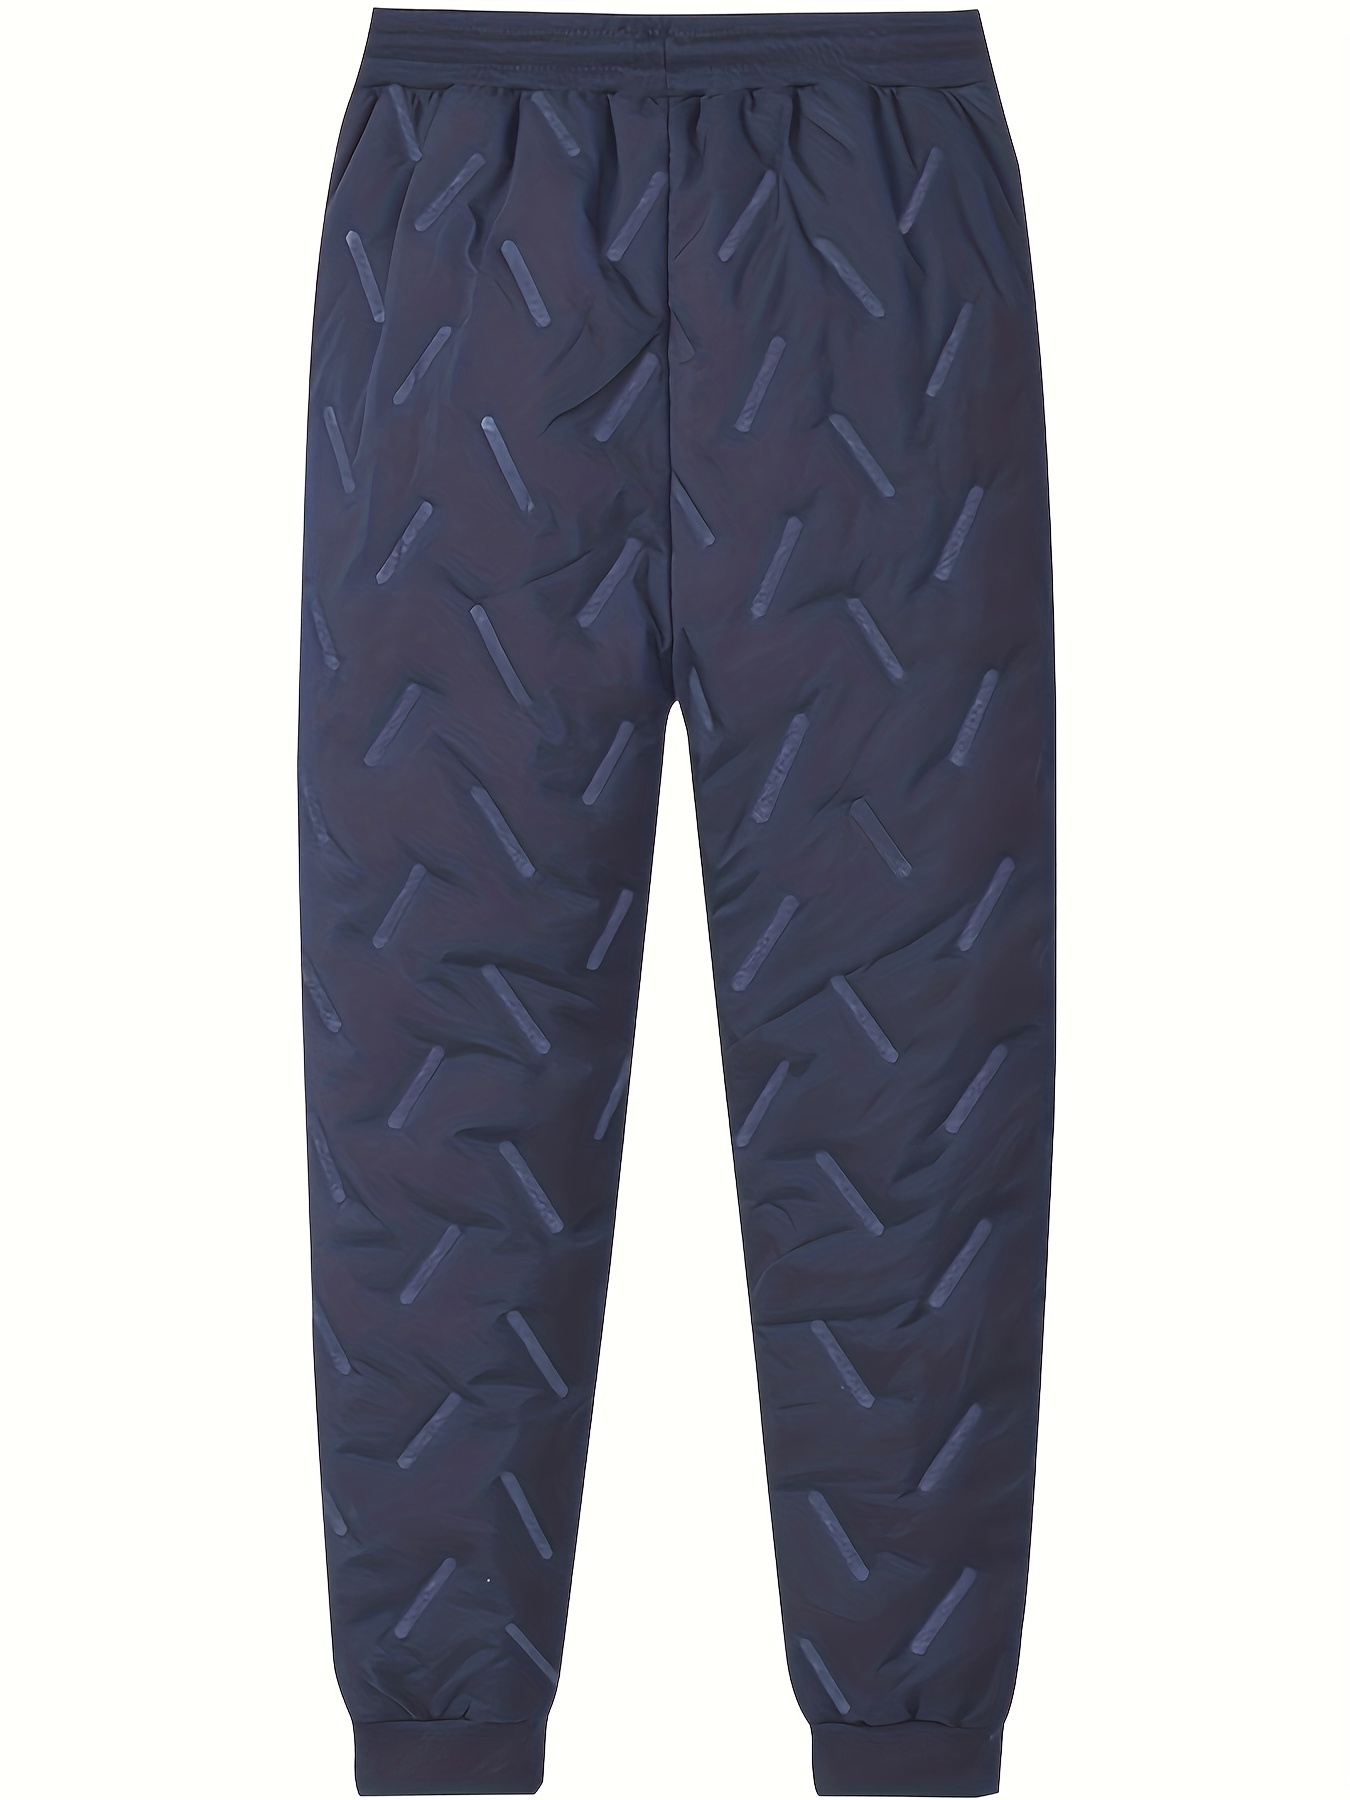 Pantalón térmico para niños con forro de punto y corte holgado Azul oscuro  estampado • 12.99 € • bonprix